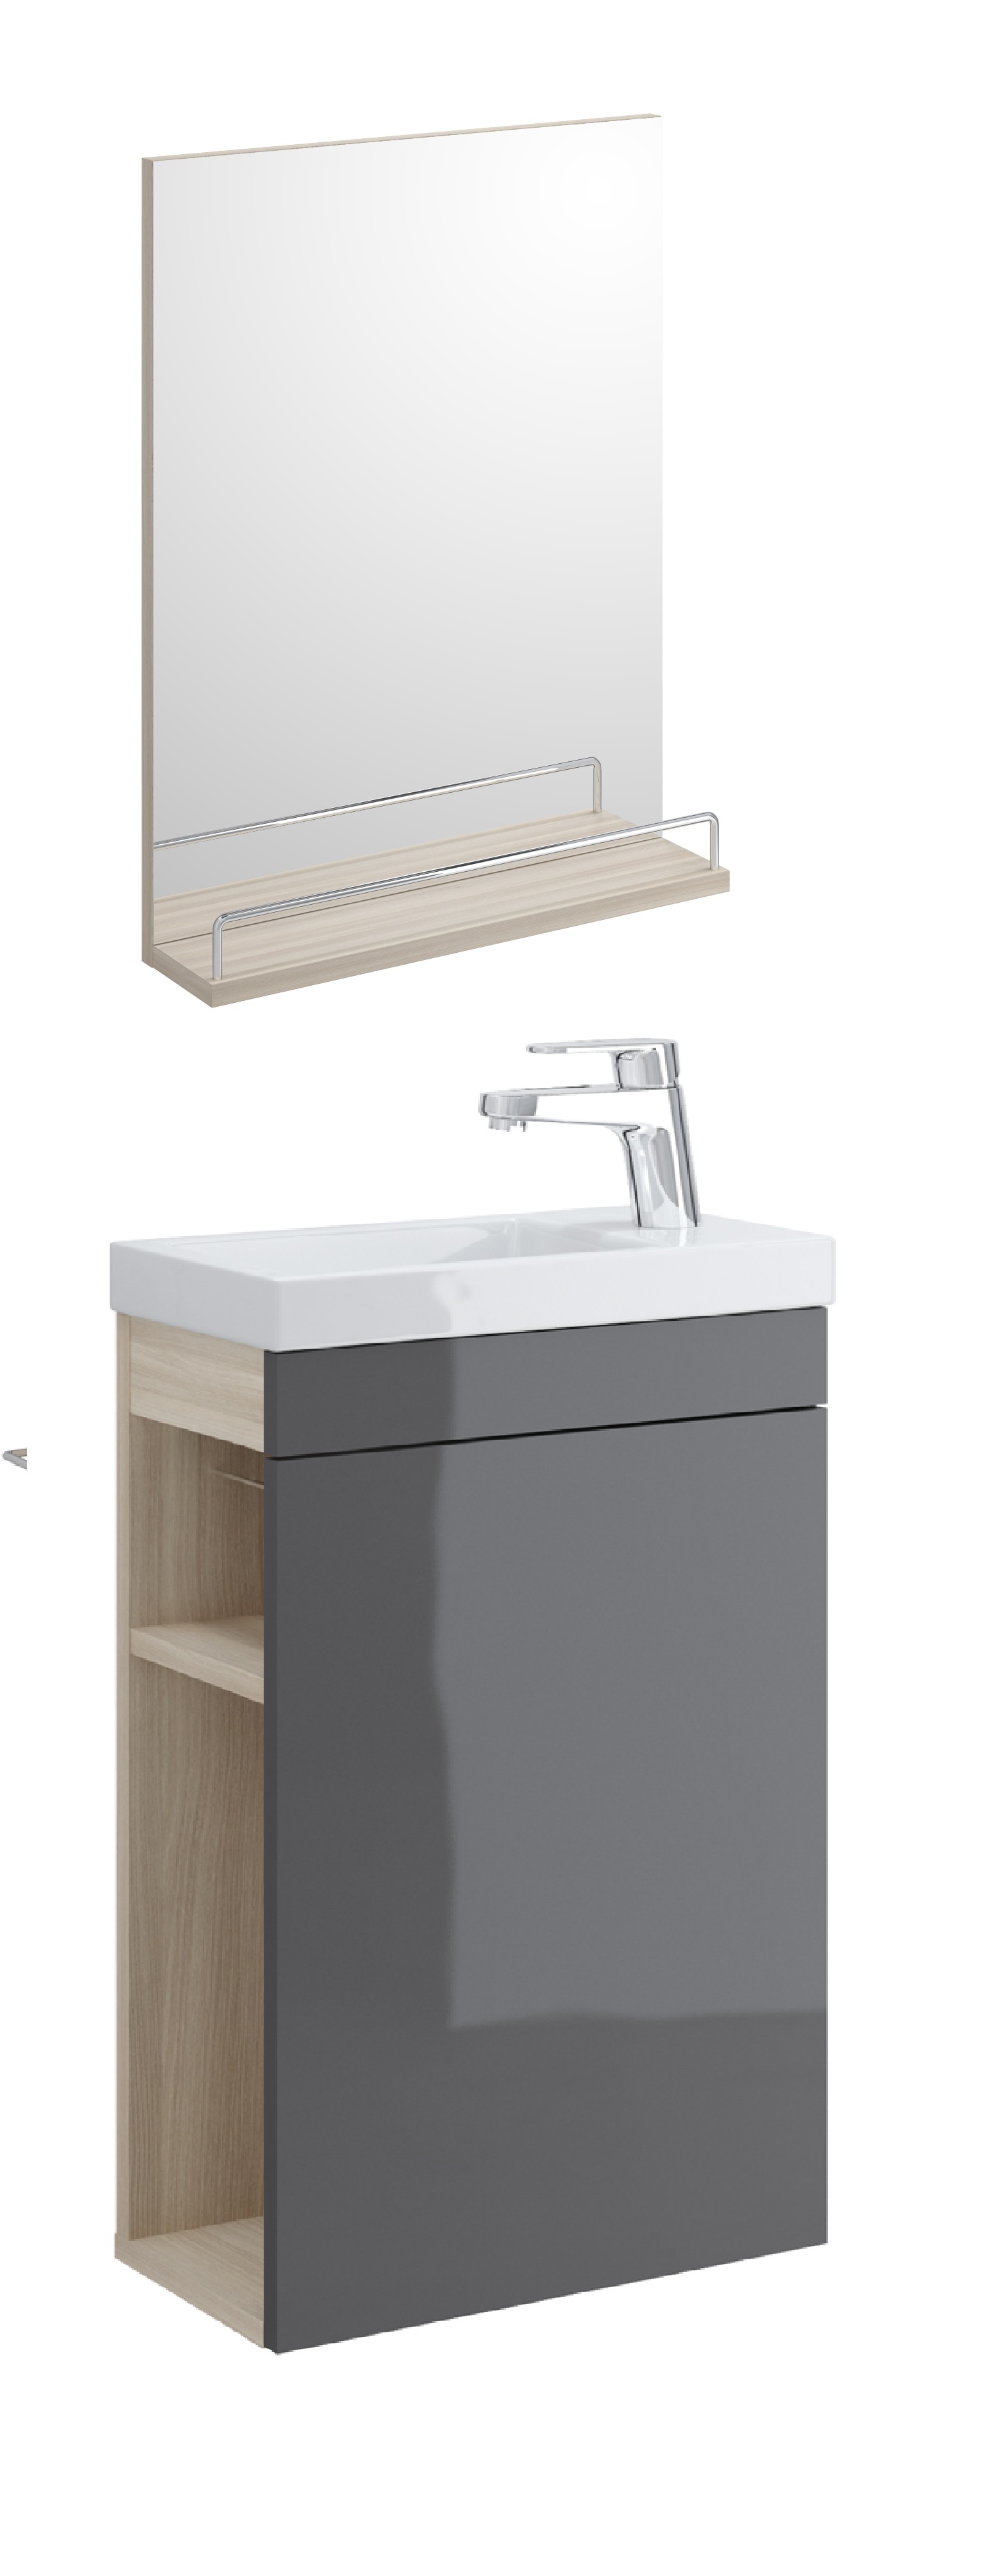 Мебель для ванной Cersanit Smart 40